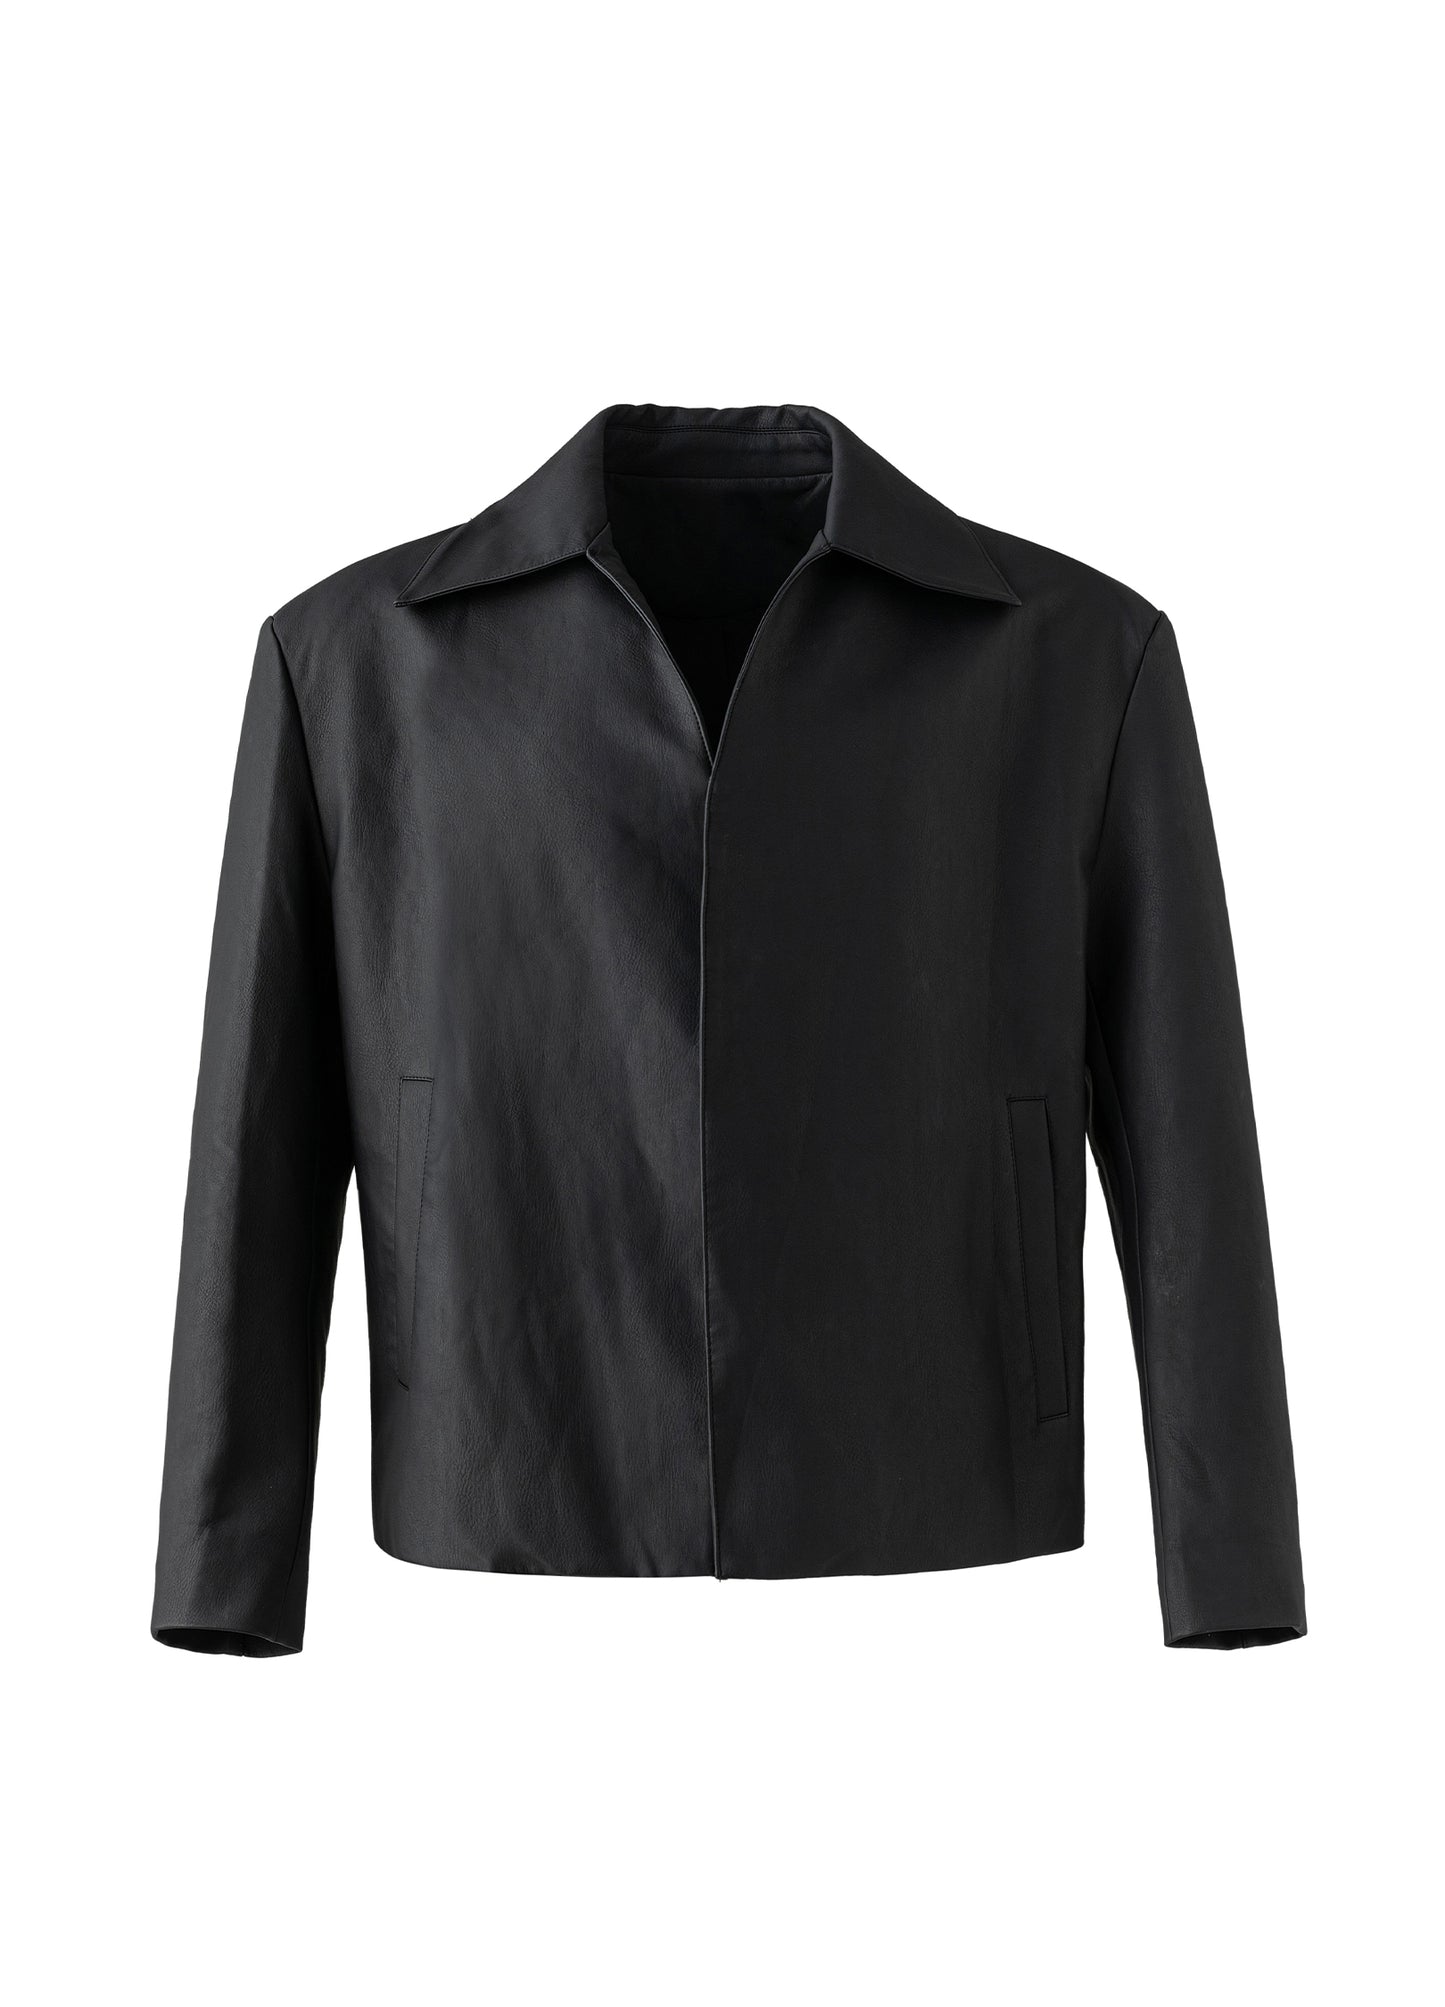 Minimal Leather jacket